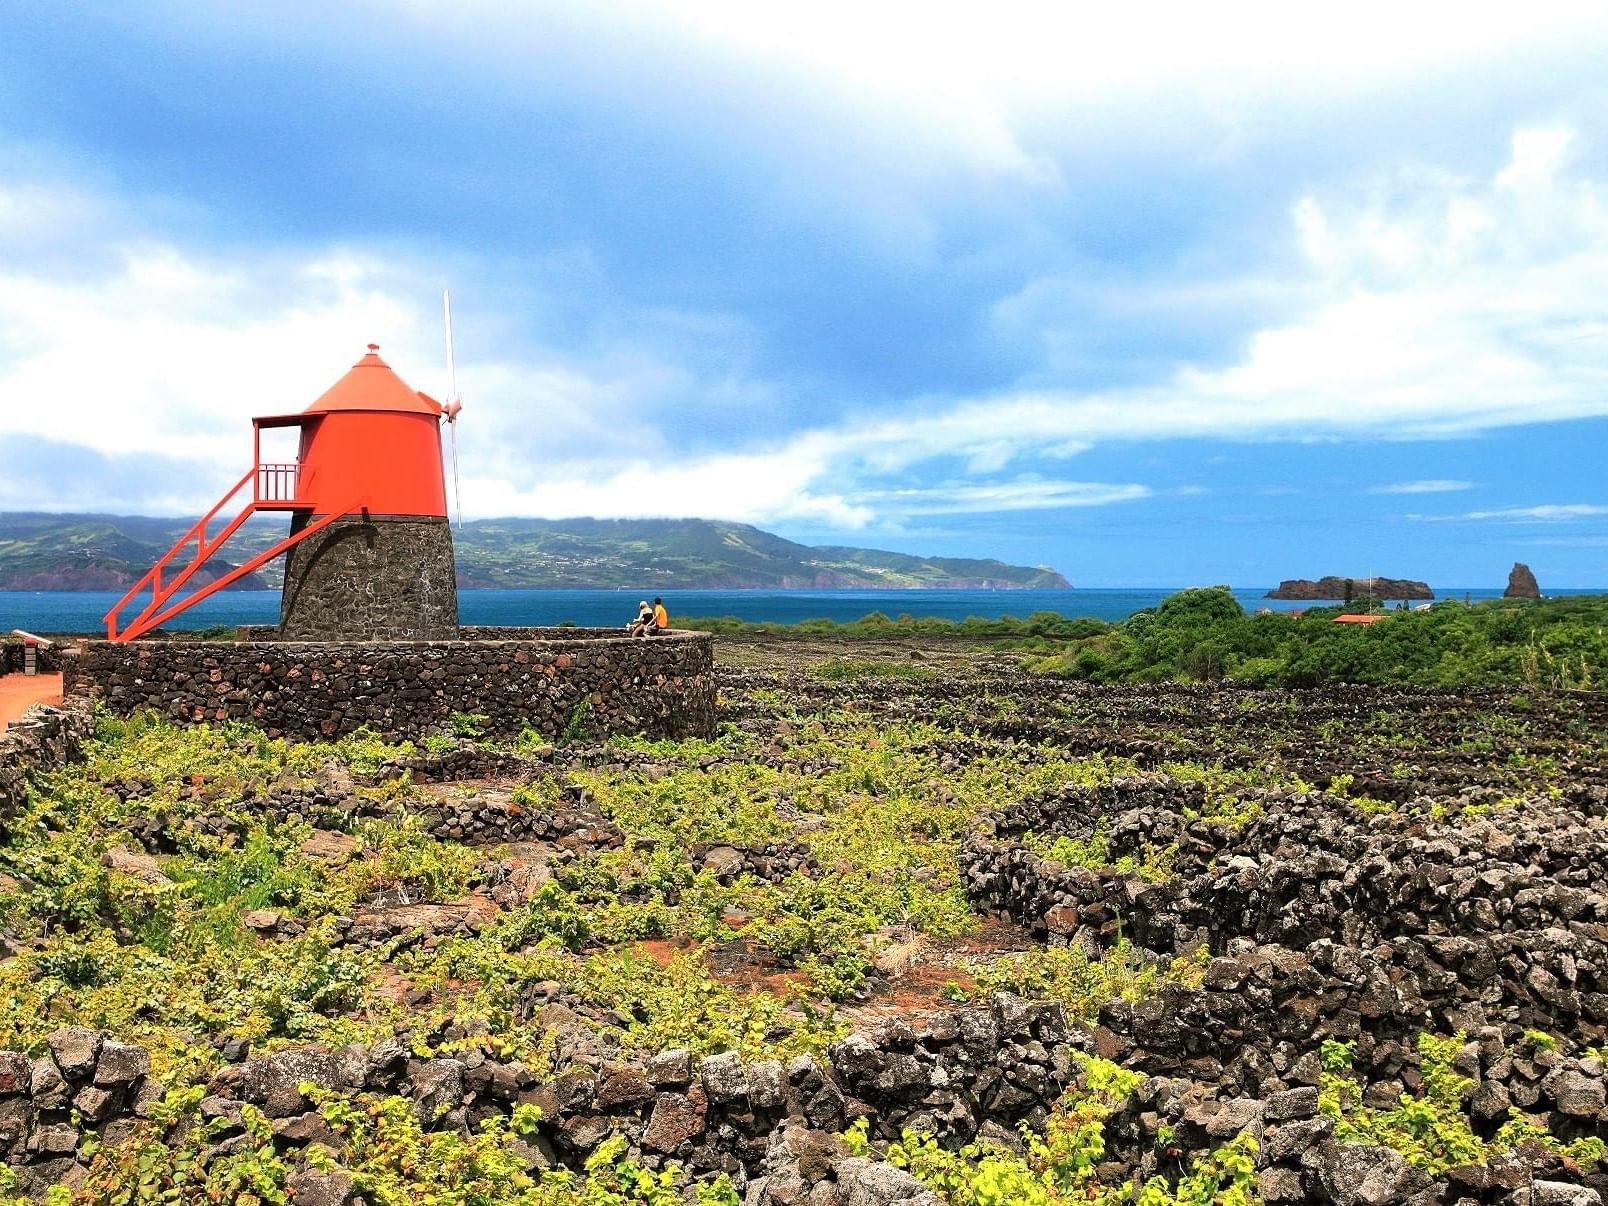 Paisagem da Cultura da Vinha da Ilha do Pico